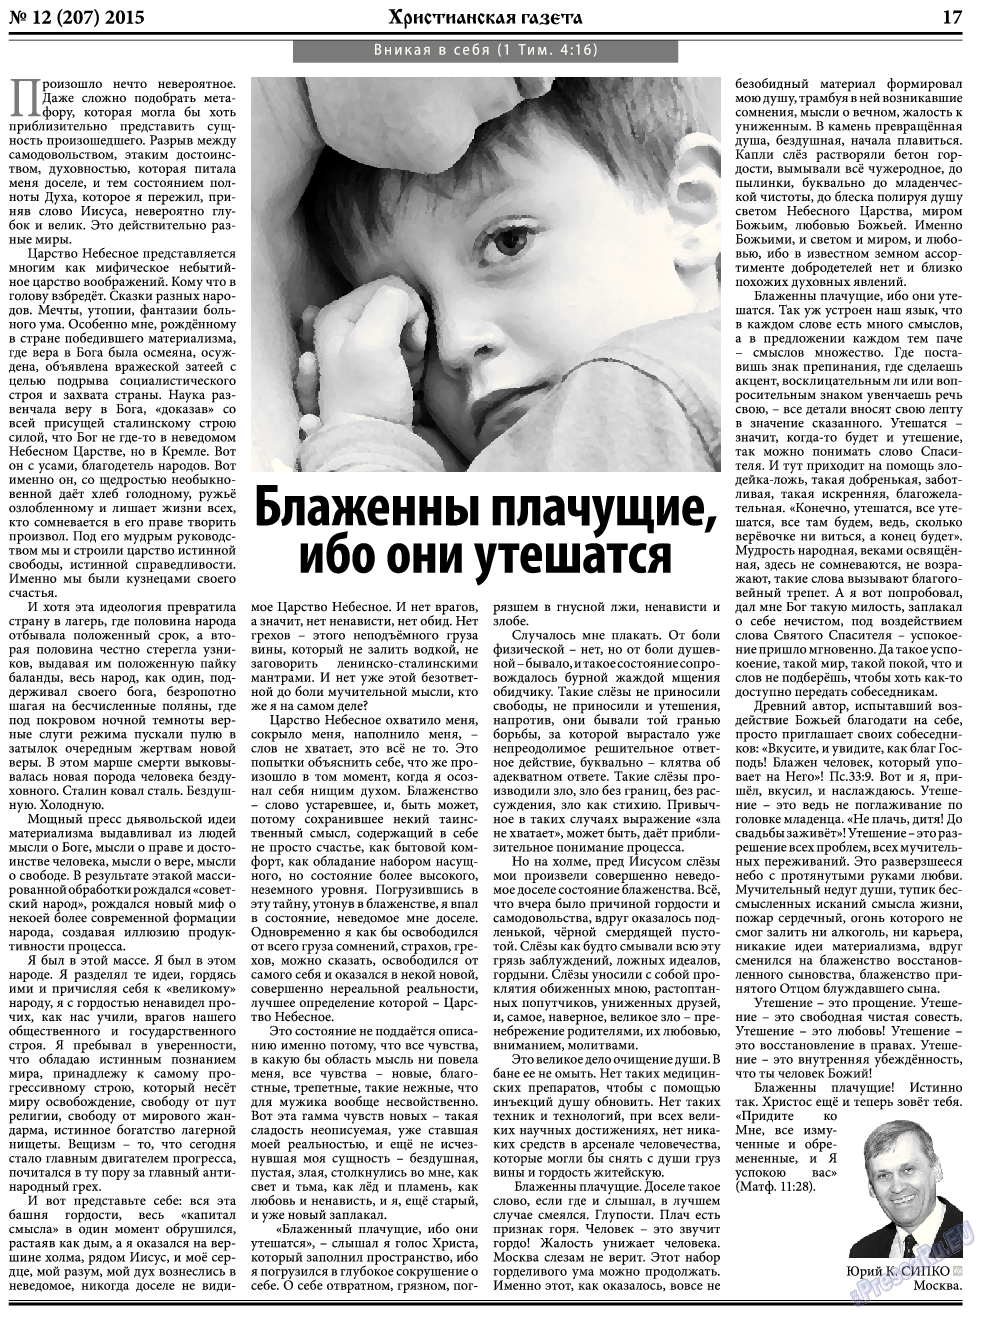 Христианская газета, газета. 2015 №12 стр.25